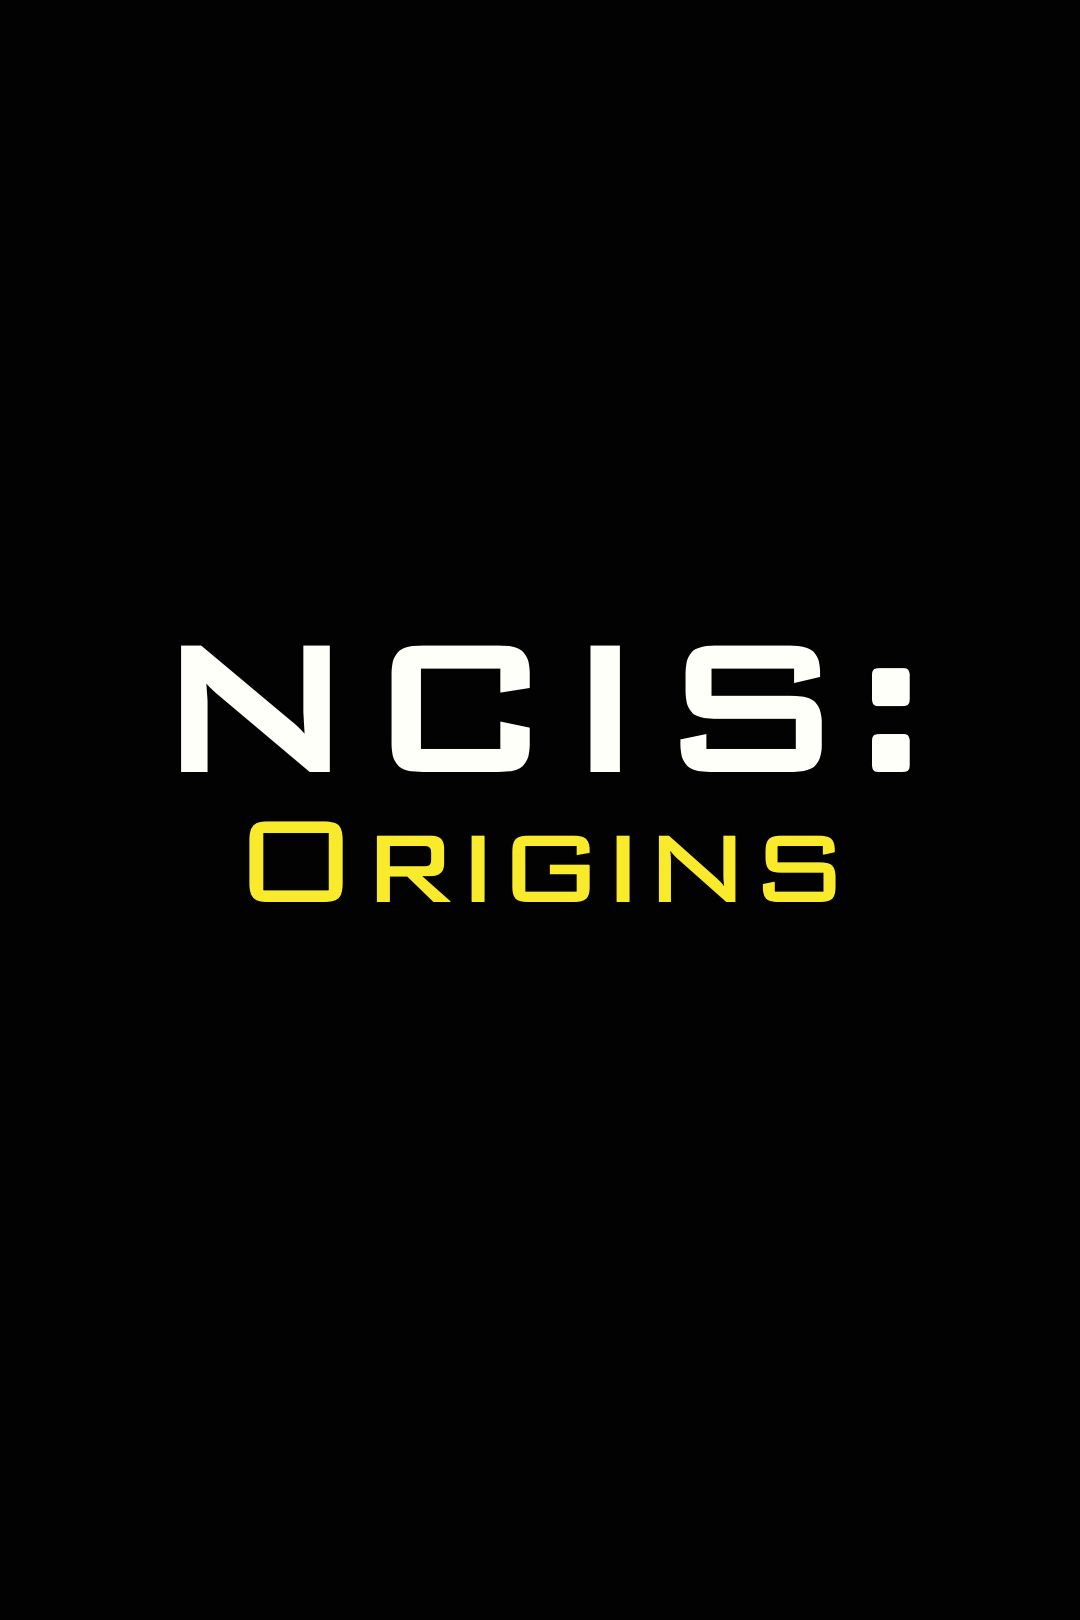 Pôster do logotipo do Temp das origens do NCIS